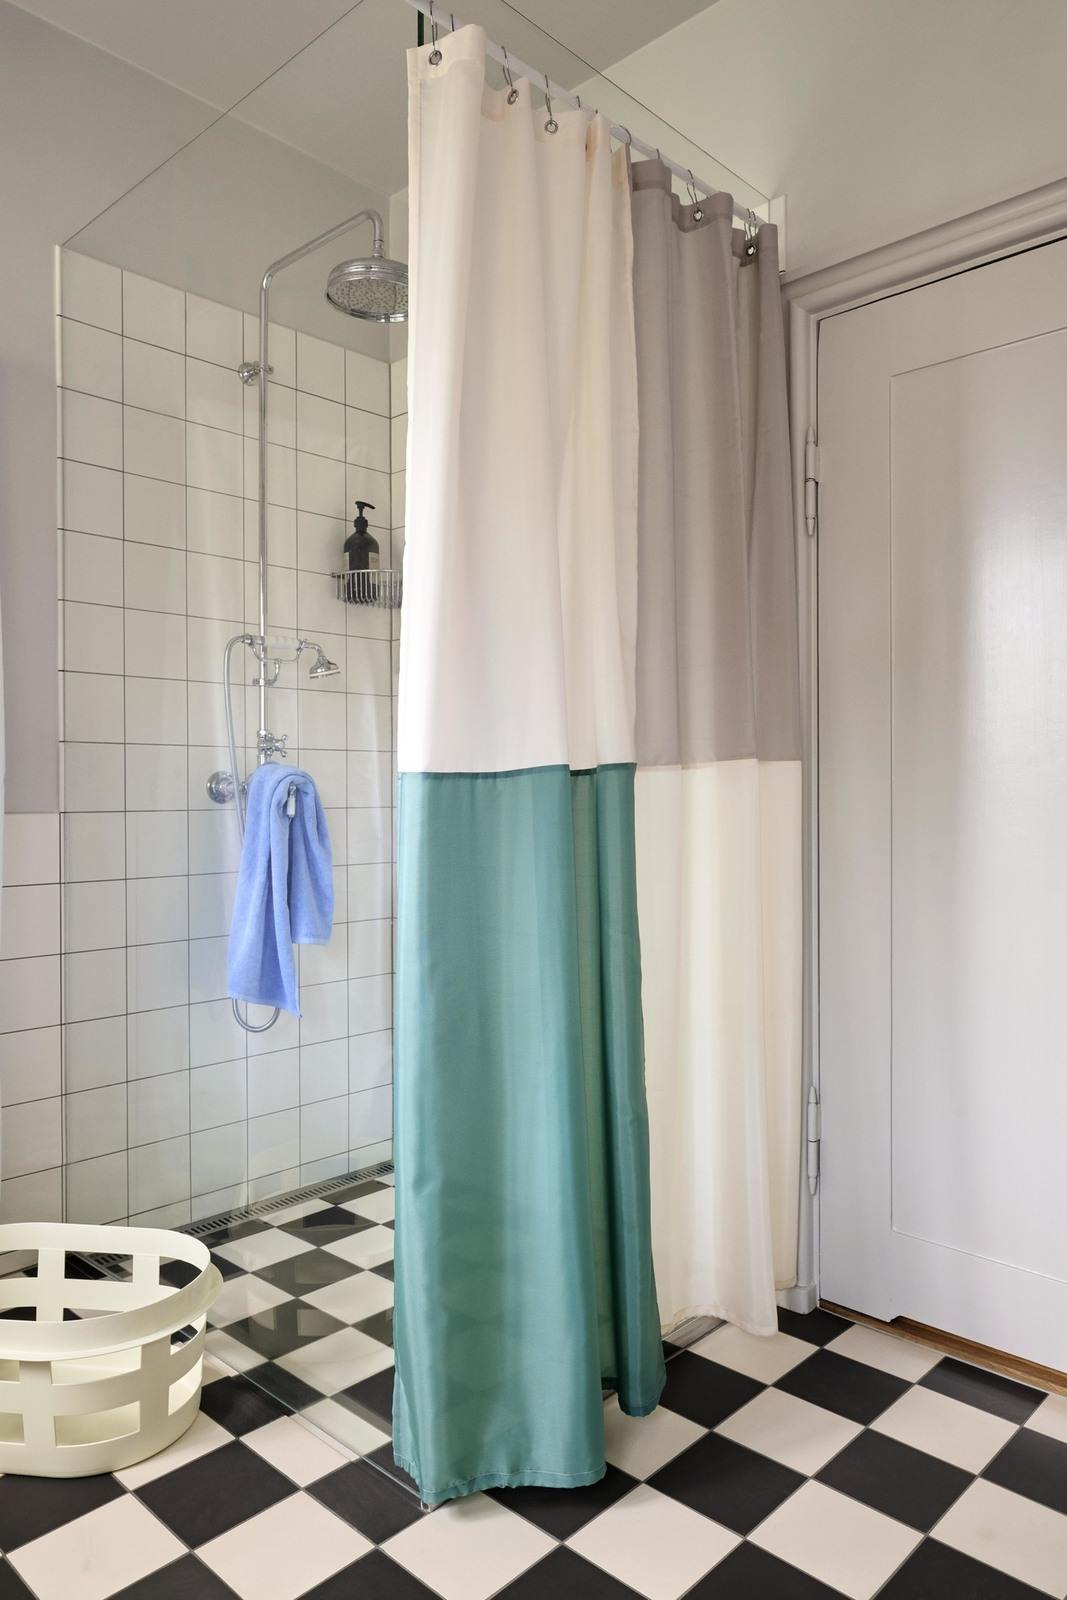 Dusche mit bunterm Duschvorhang und Fußboden im Schachbrettmuster